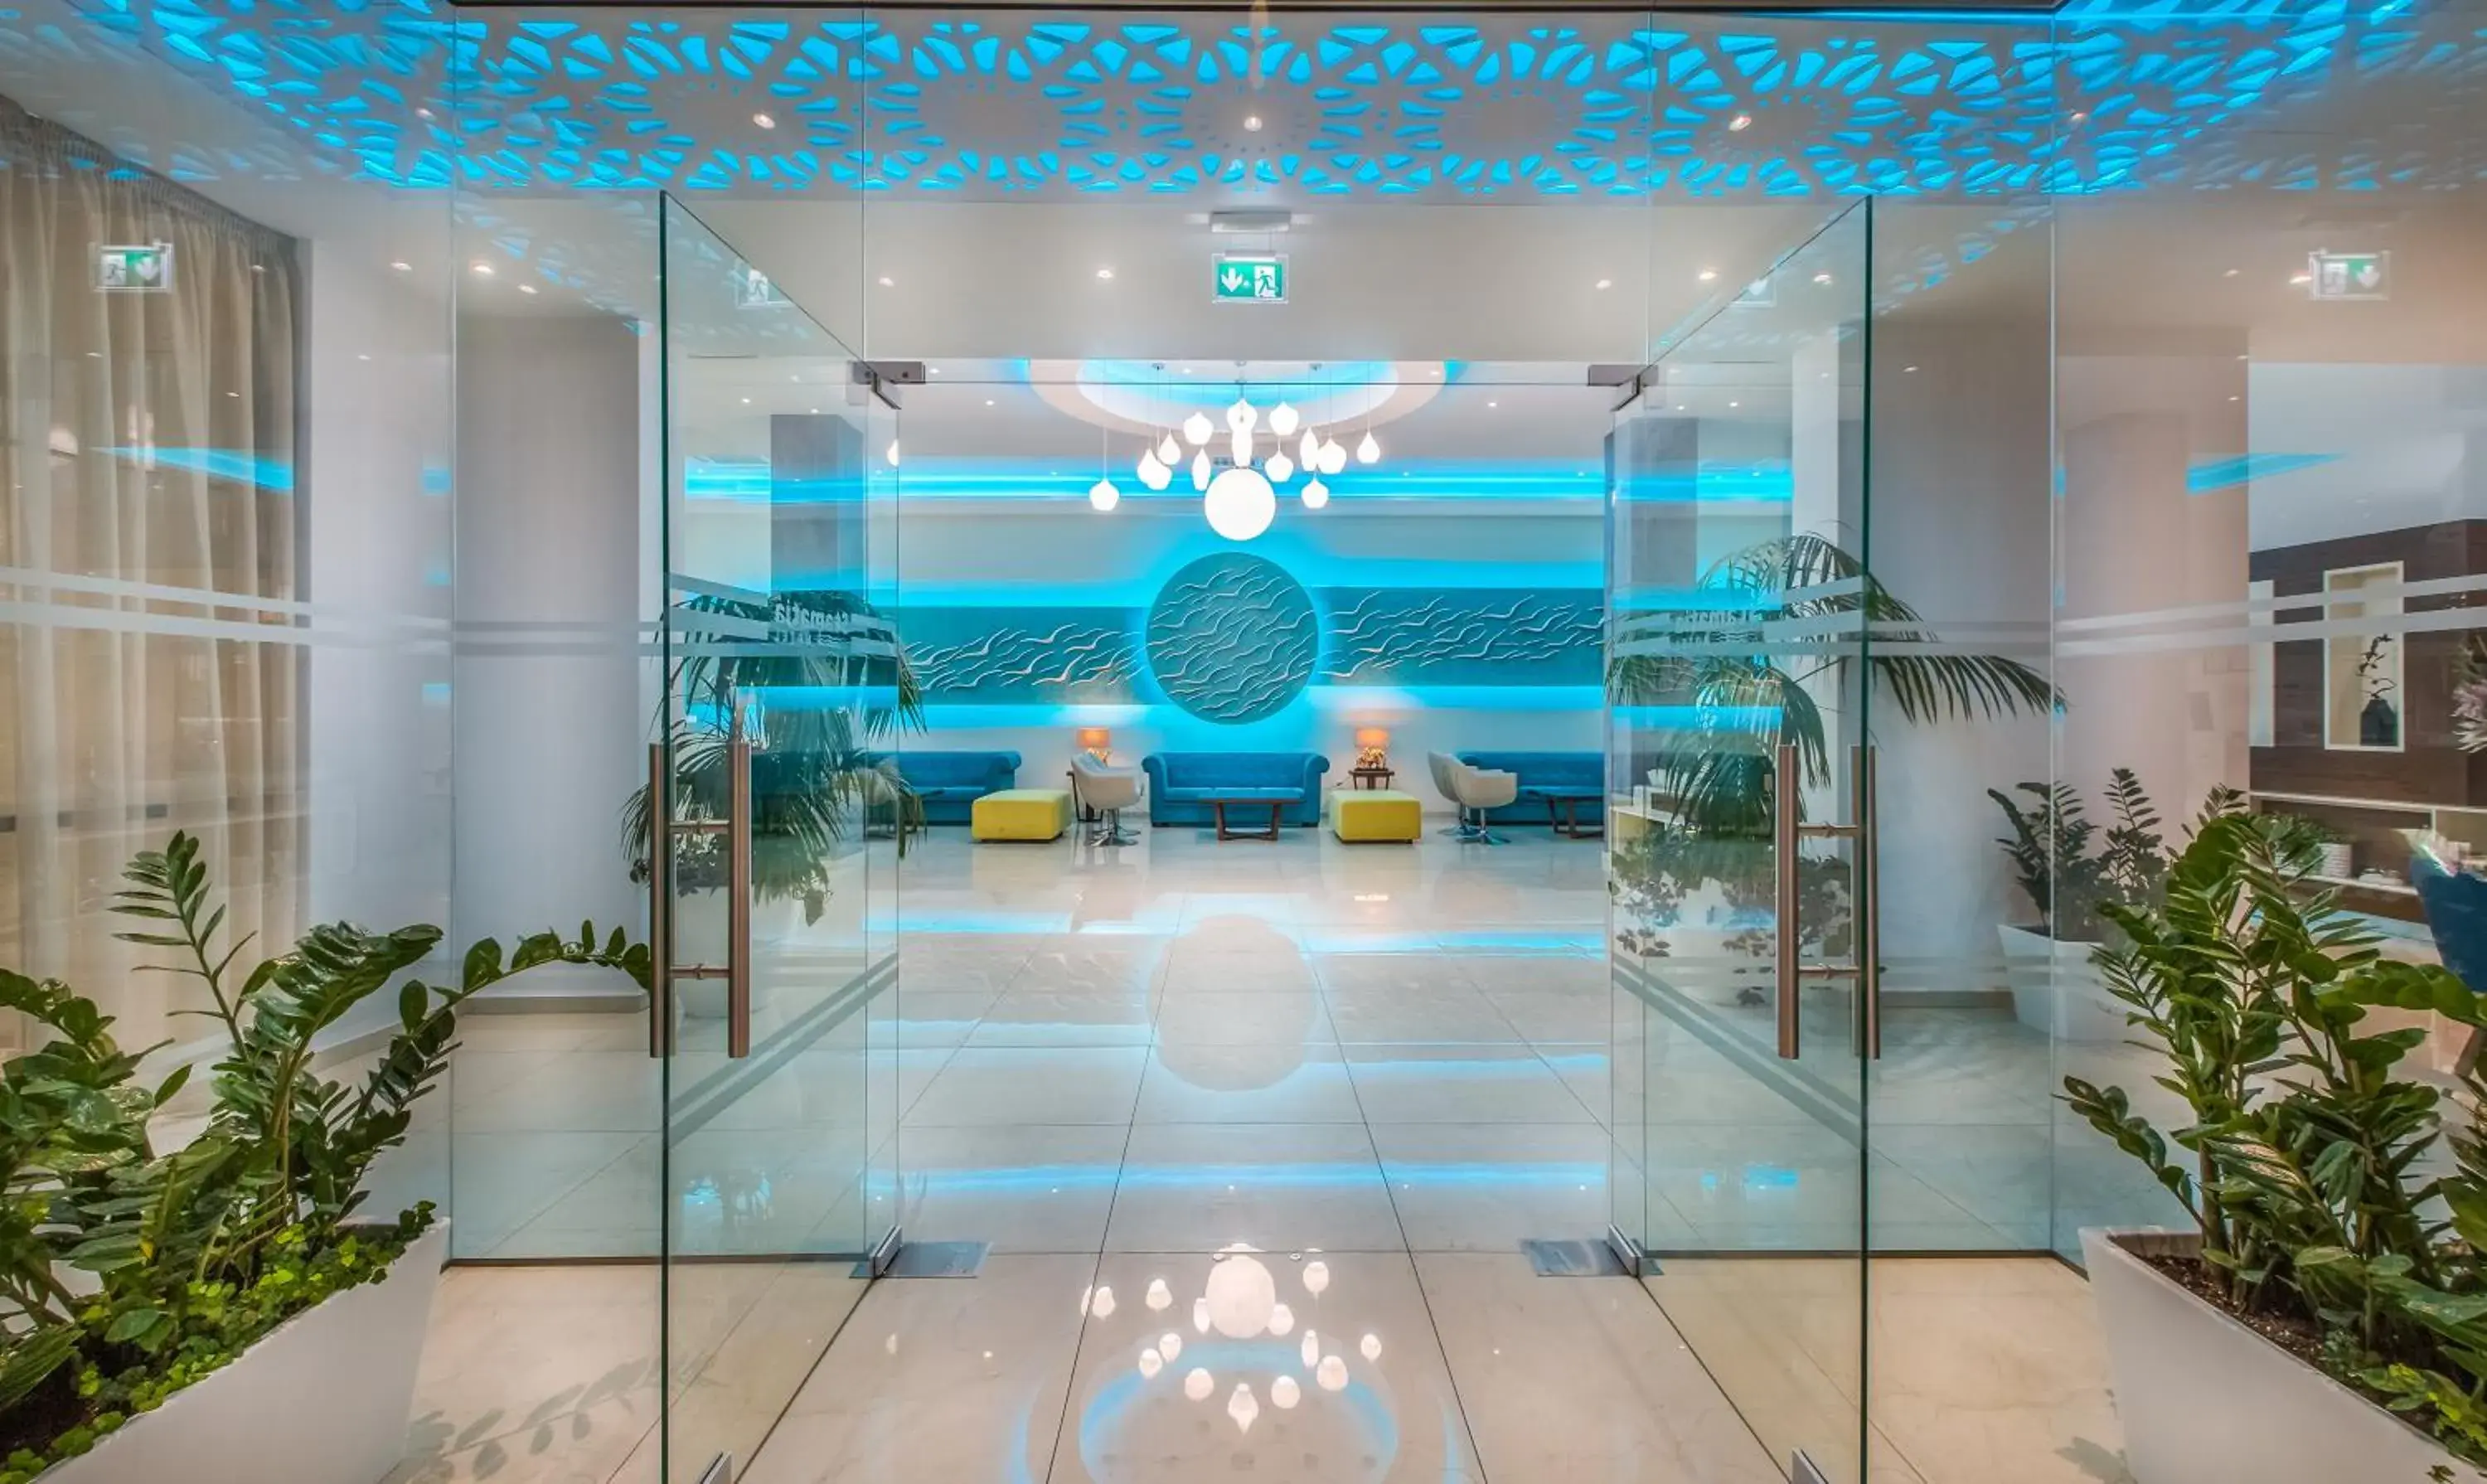 Lobby or reception in Stamatia Hotel